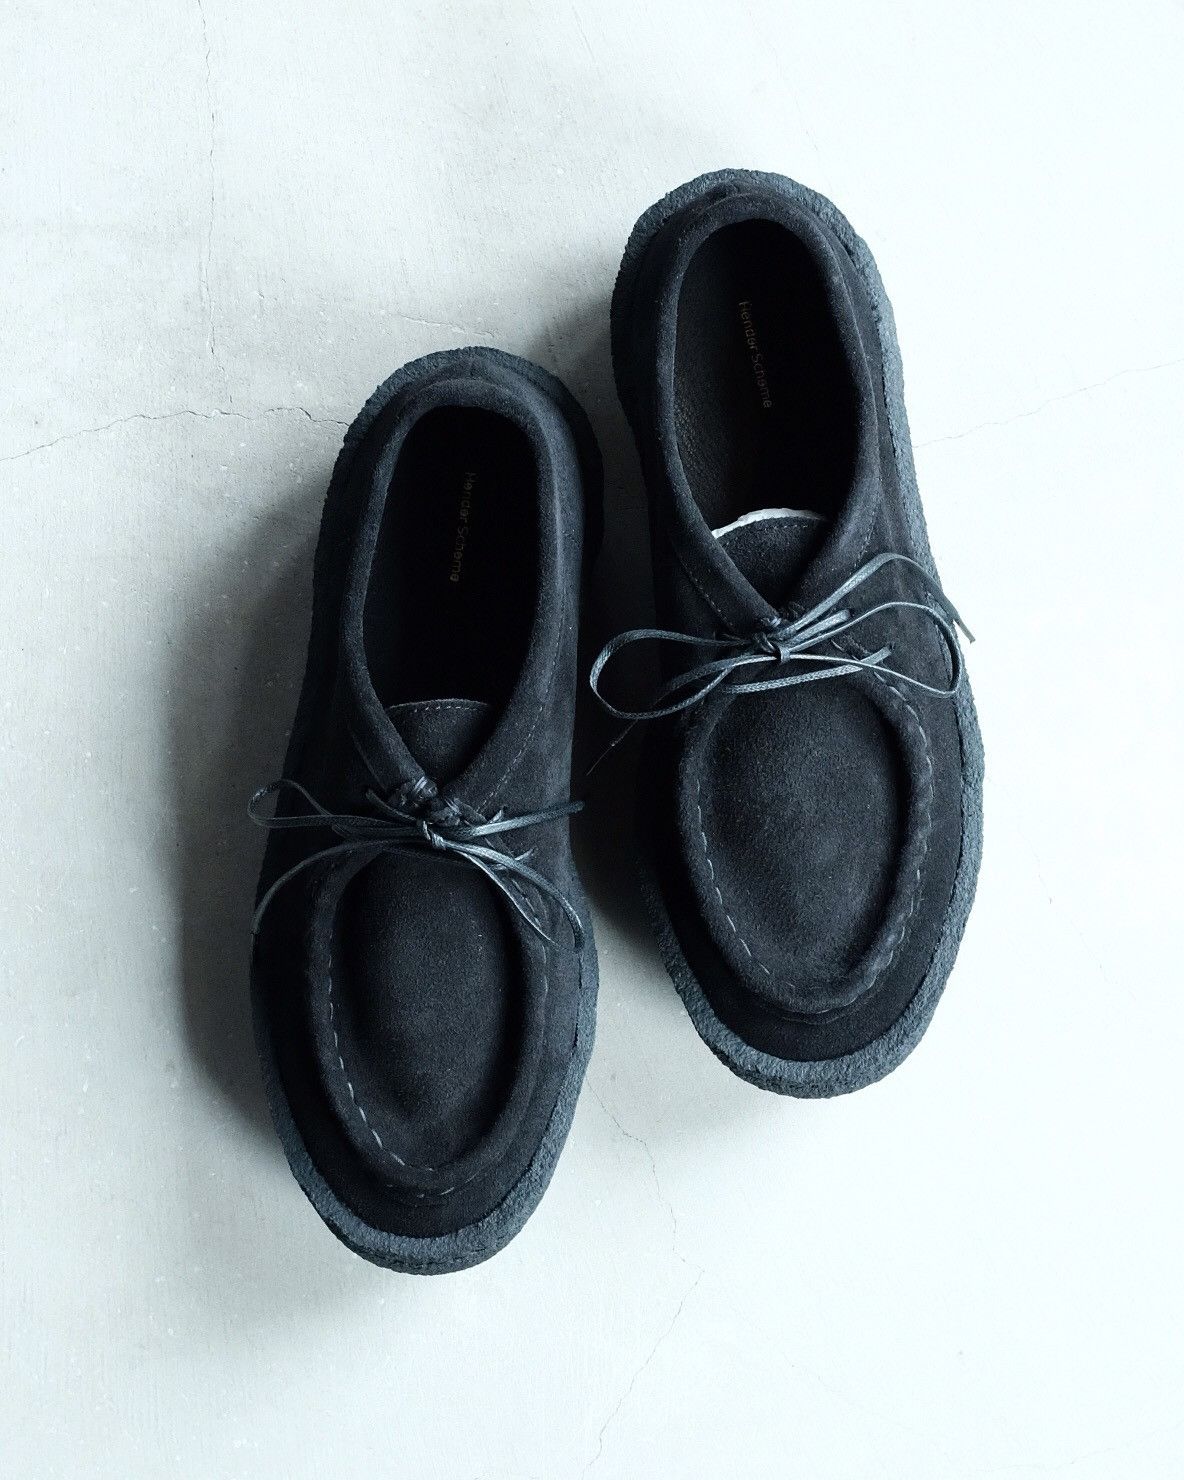 Hender Scheme Hender Scheme Tarte Shoes - Black Suede | Grailed